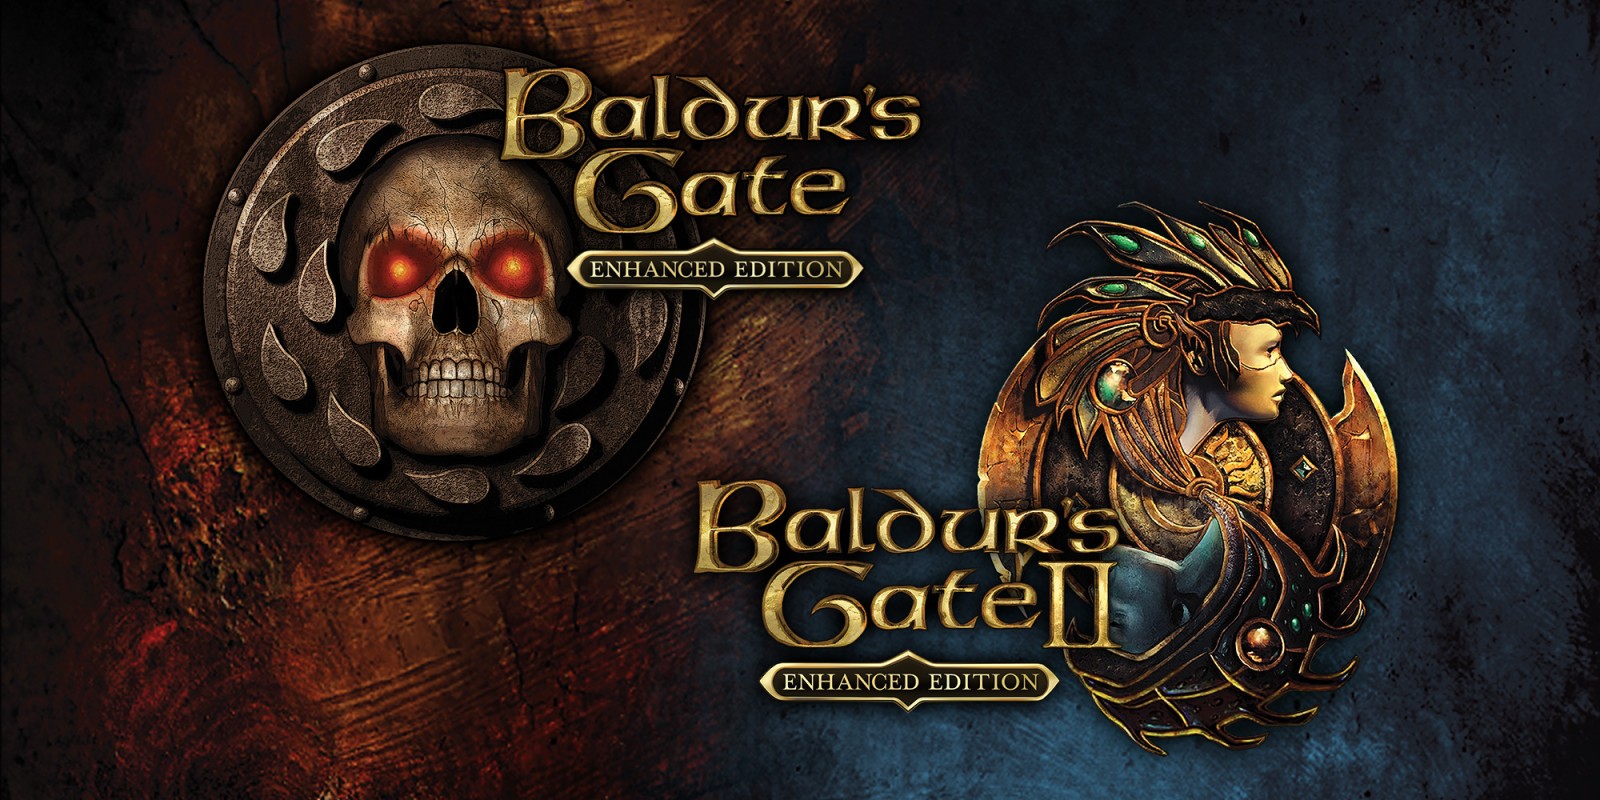 Baldur’s Gate I & II, Planescape: Torment e Icewind Dale disponibili su console per la prima volta in assoluto